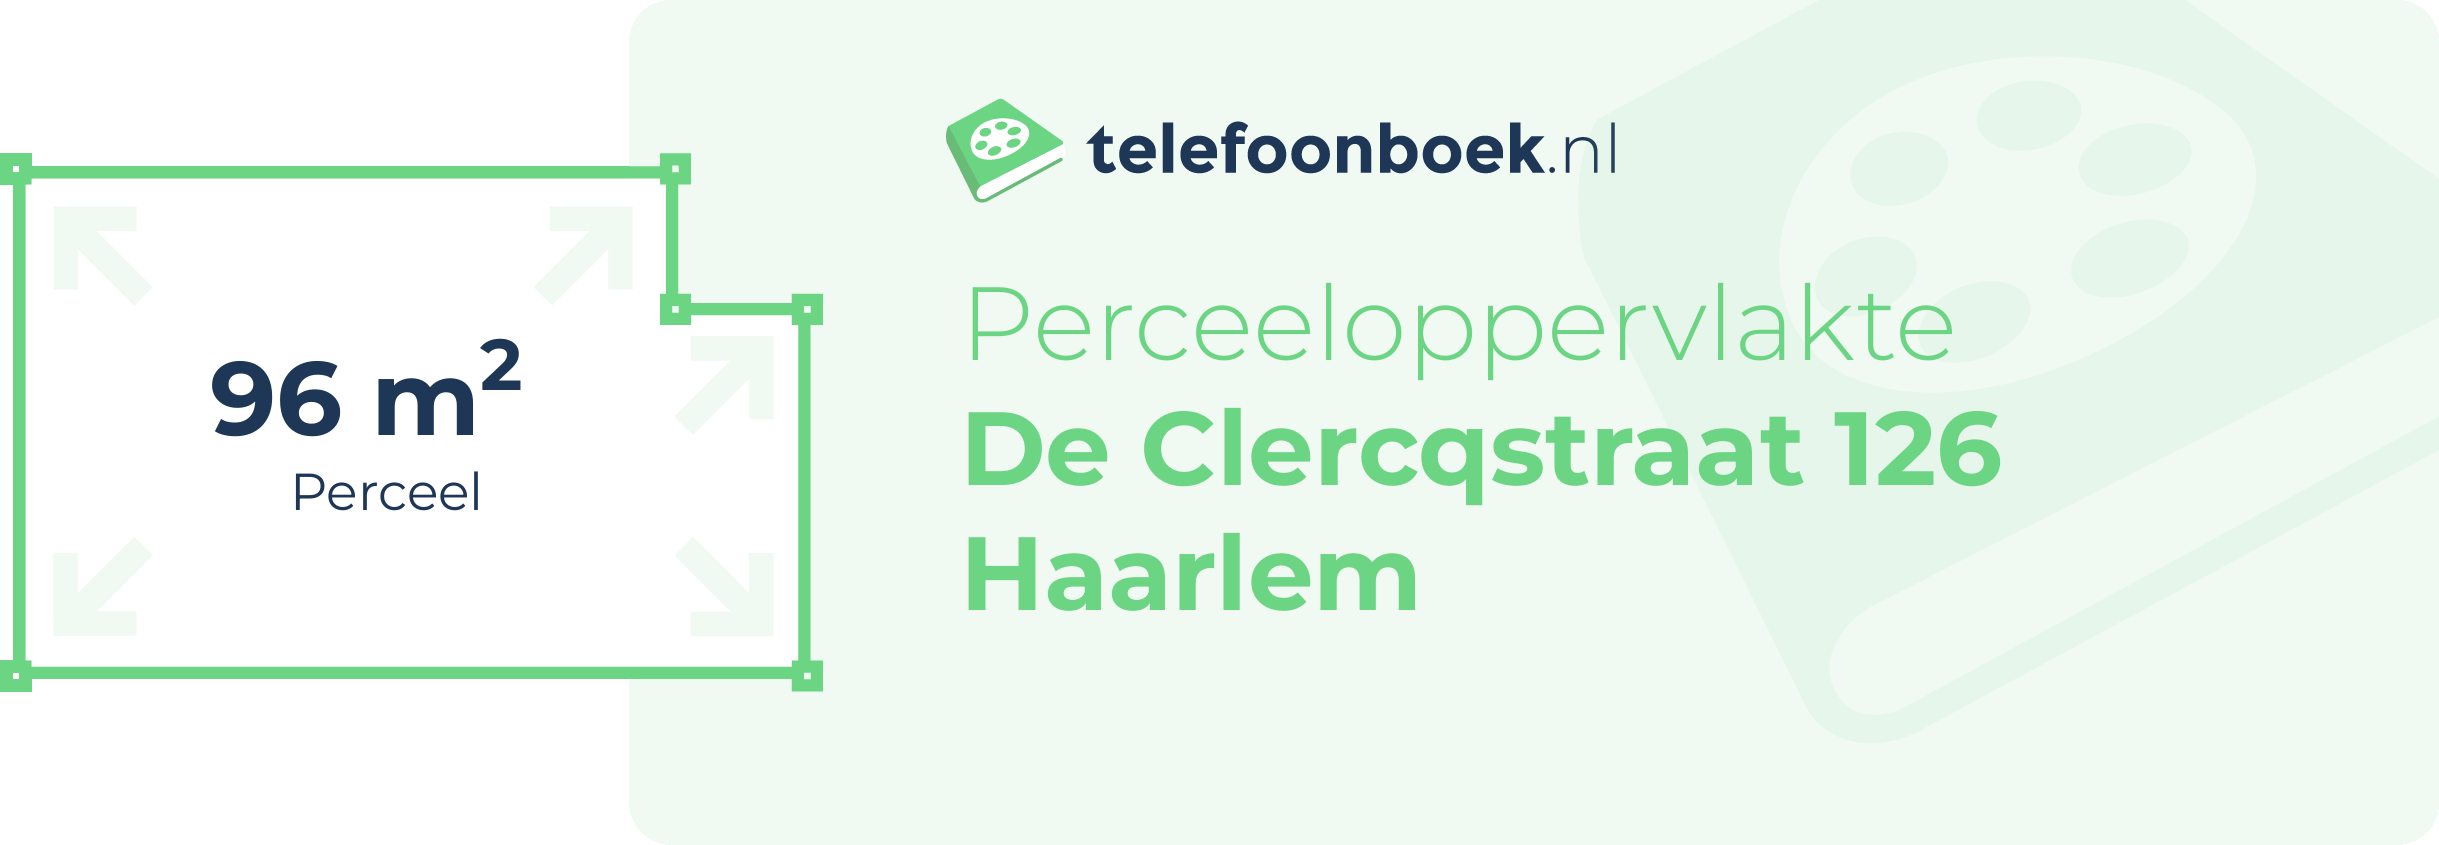 Perceeloppervlakte De Clercqstraat 126 Haarlem